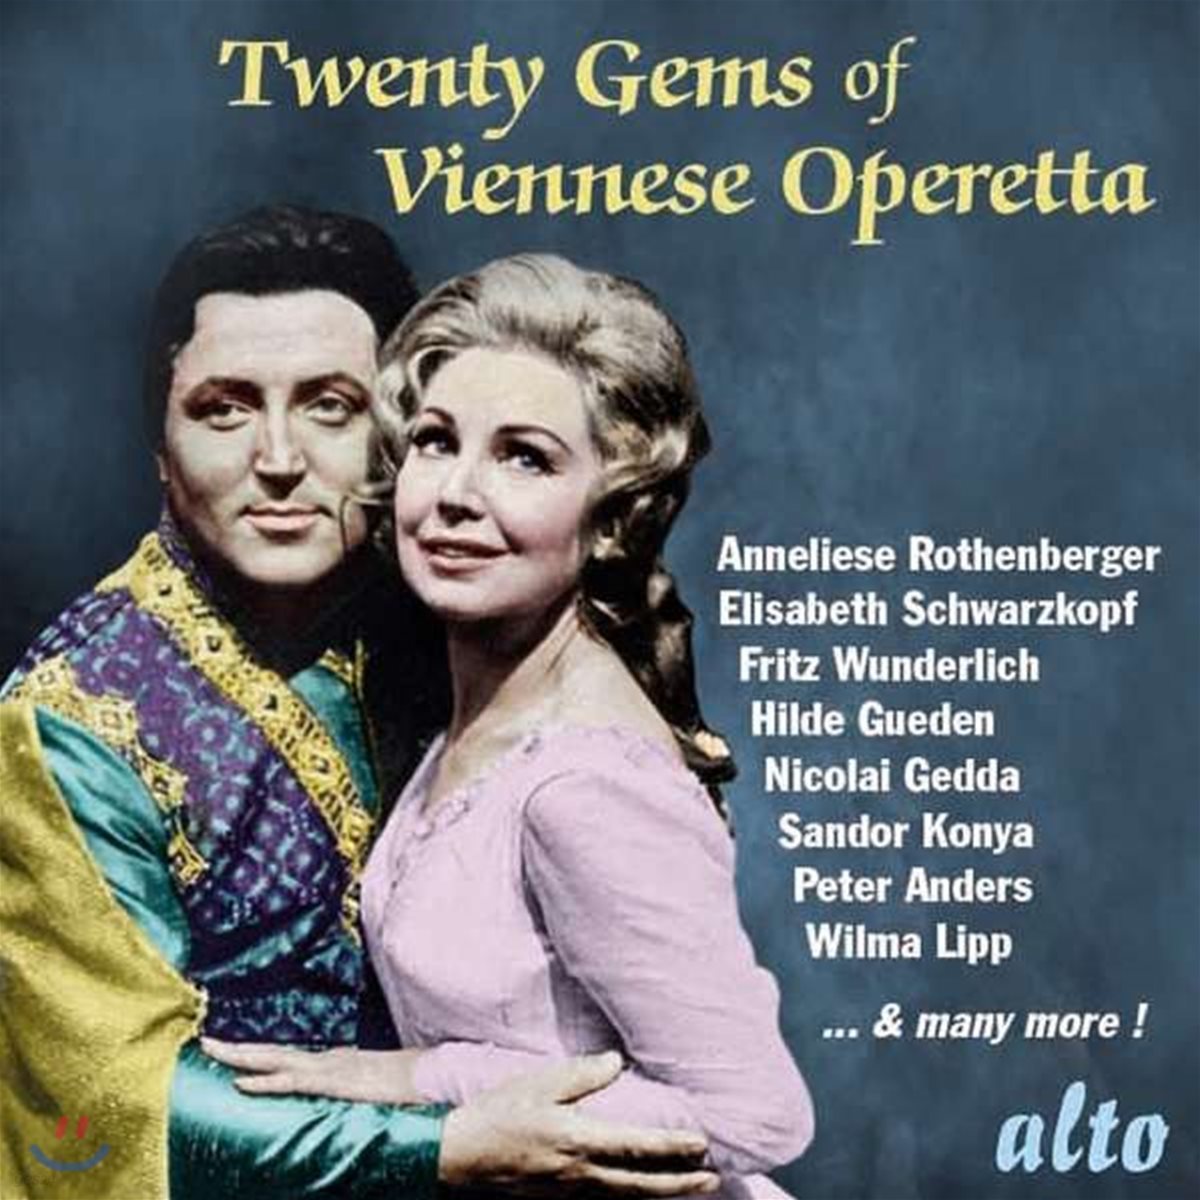 Elisabeth Schwarzkopf 비엔나 오페레타 모음집 (Twenty Gems of Viennese Operetta)